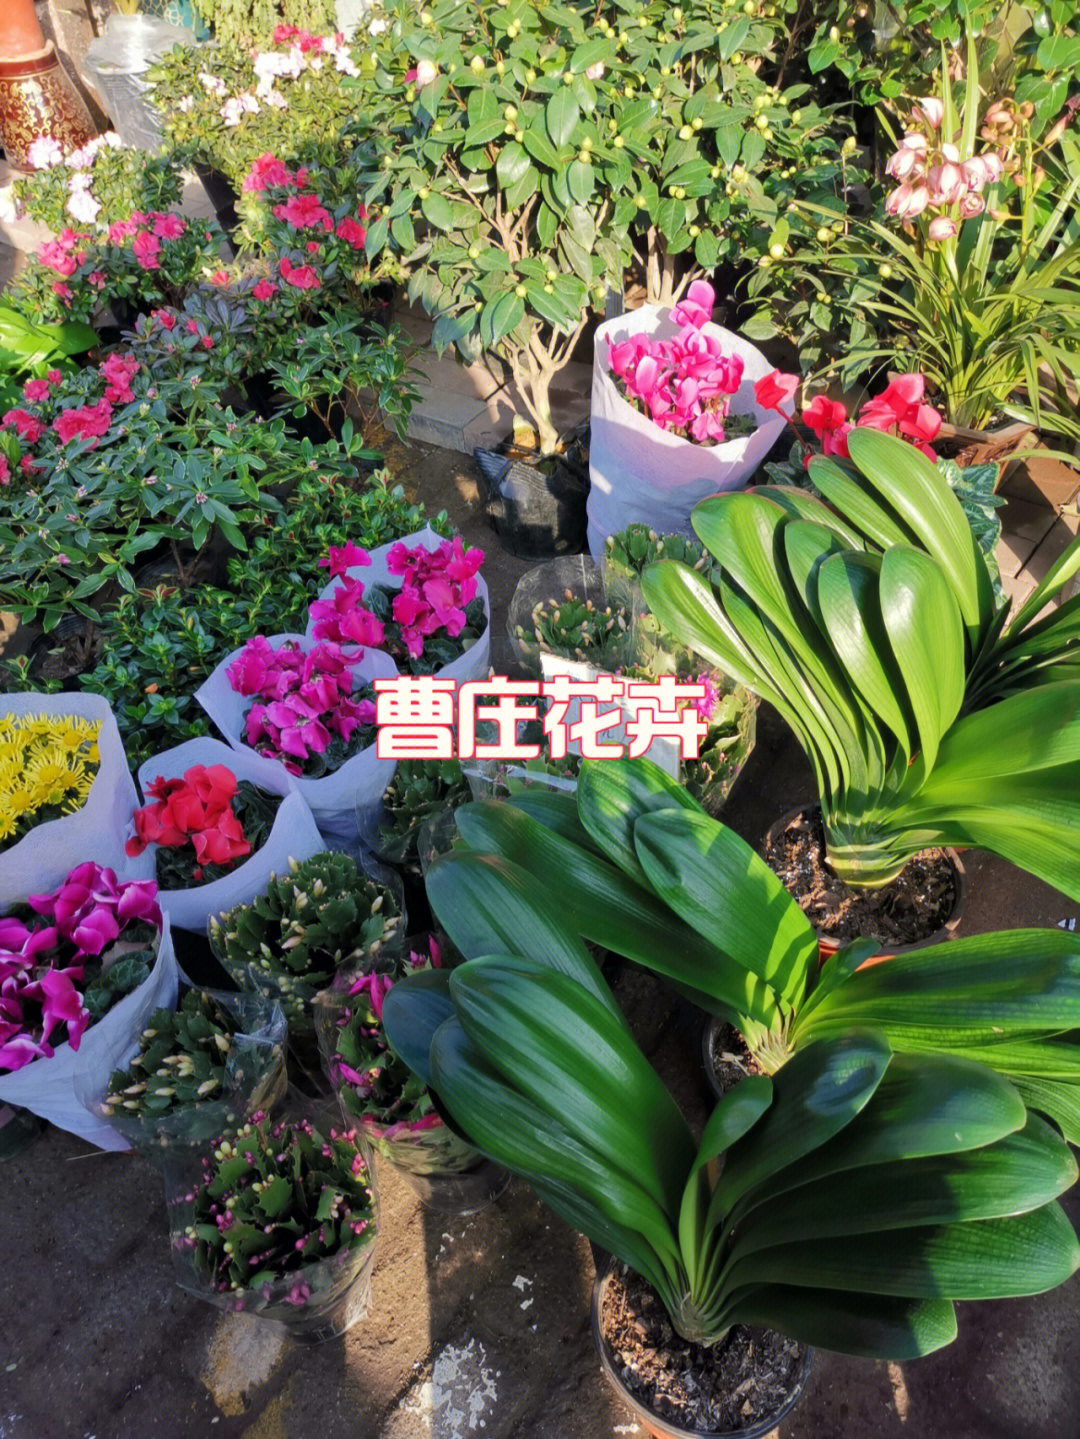 天津最大花卉市场图片